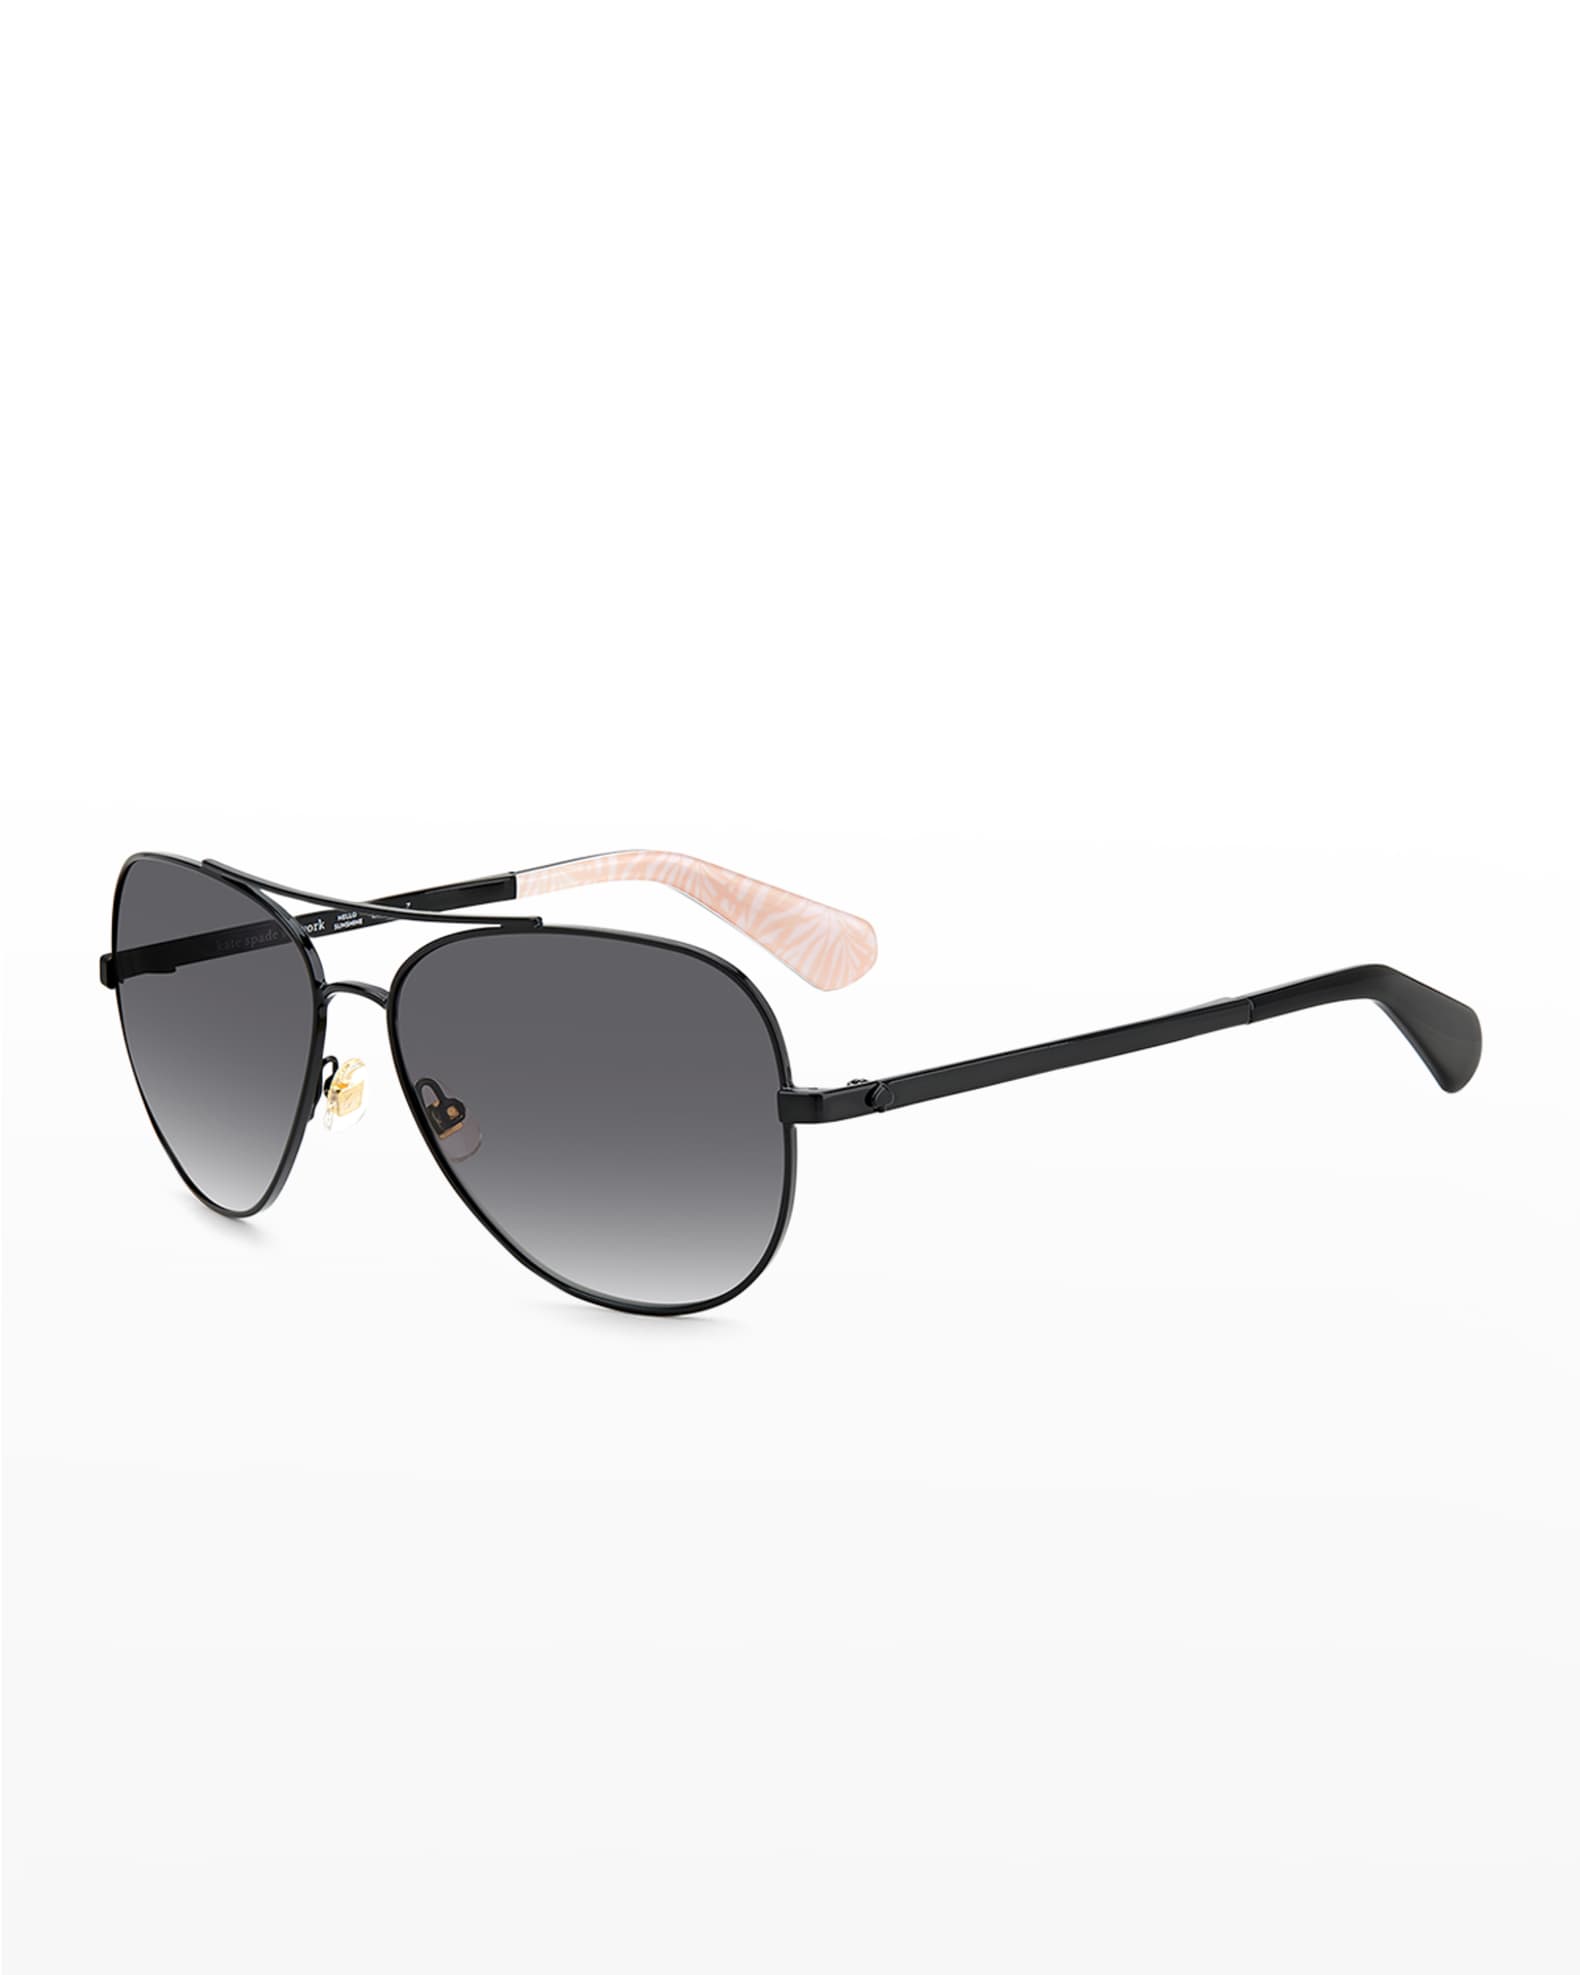 kate spade new york avaline mirrored aviator sunglasses | Neiman Marcus